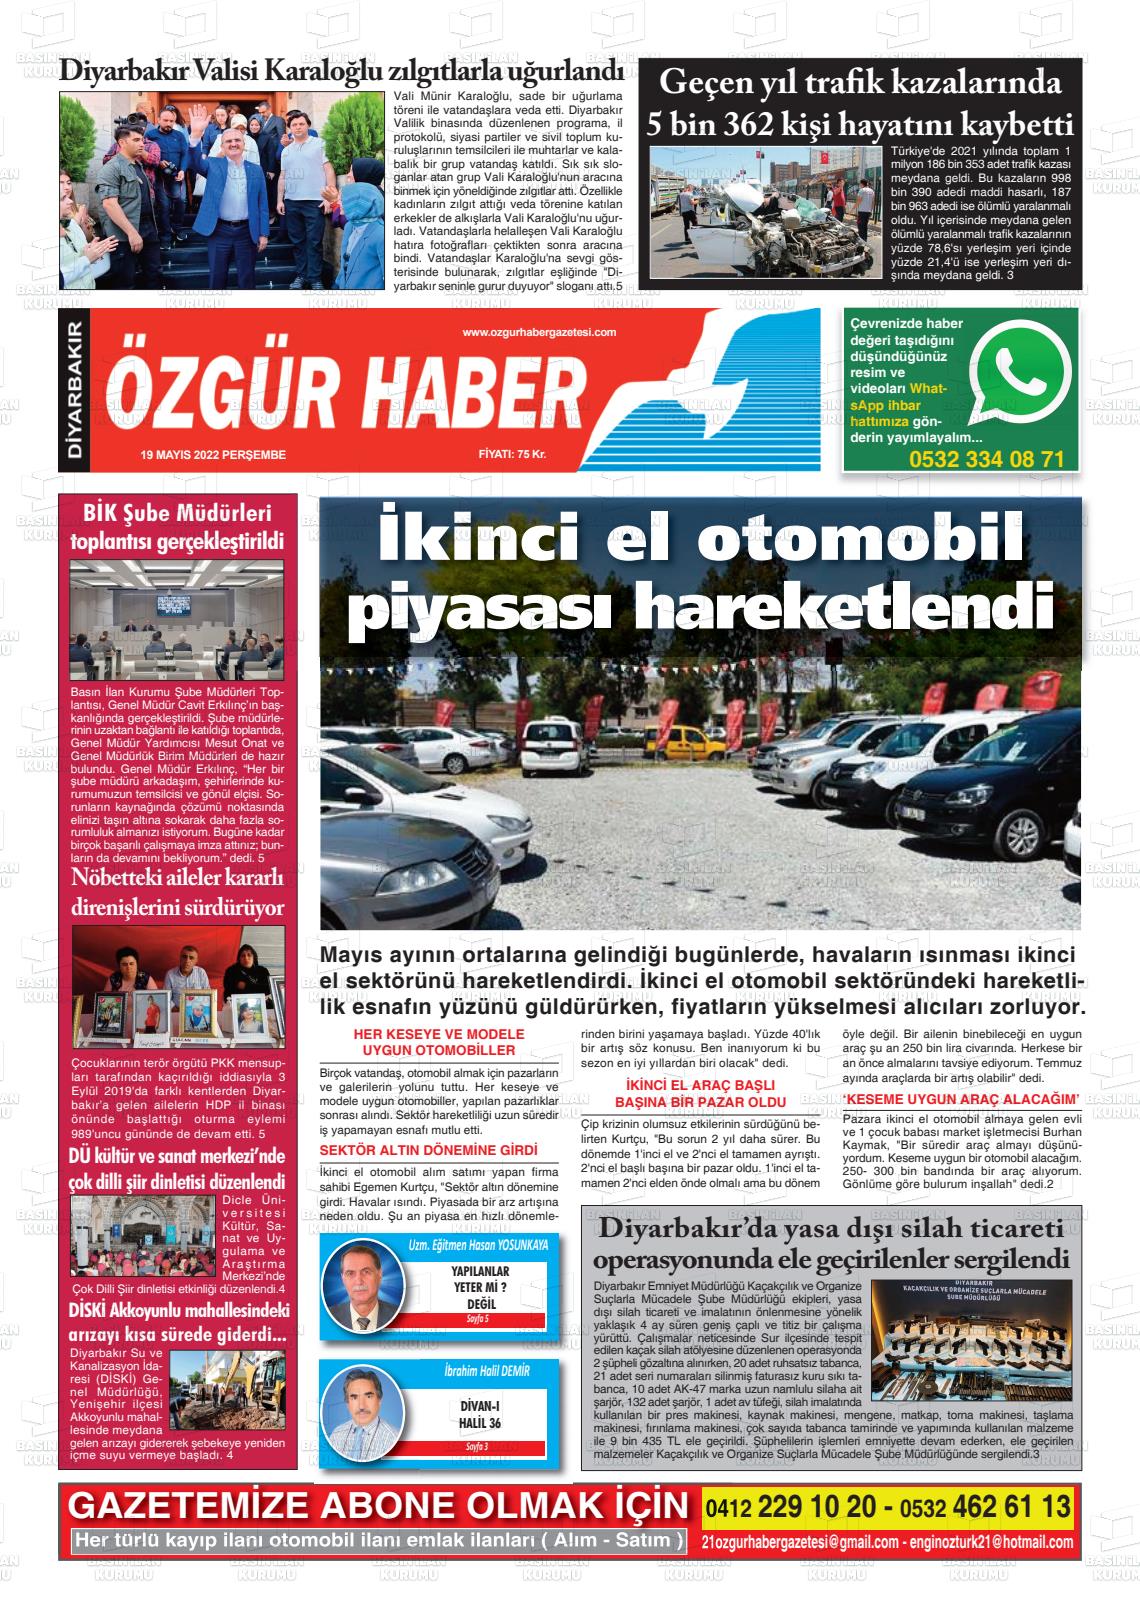 19 Mayıs 2022 Özgür Haber Gazete Manşeti